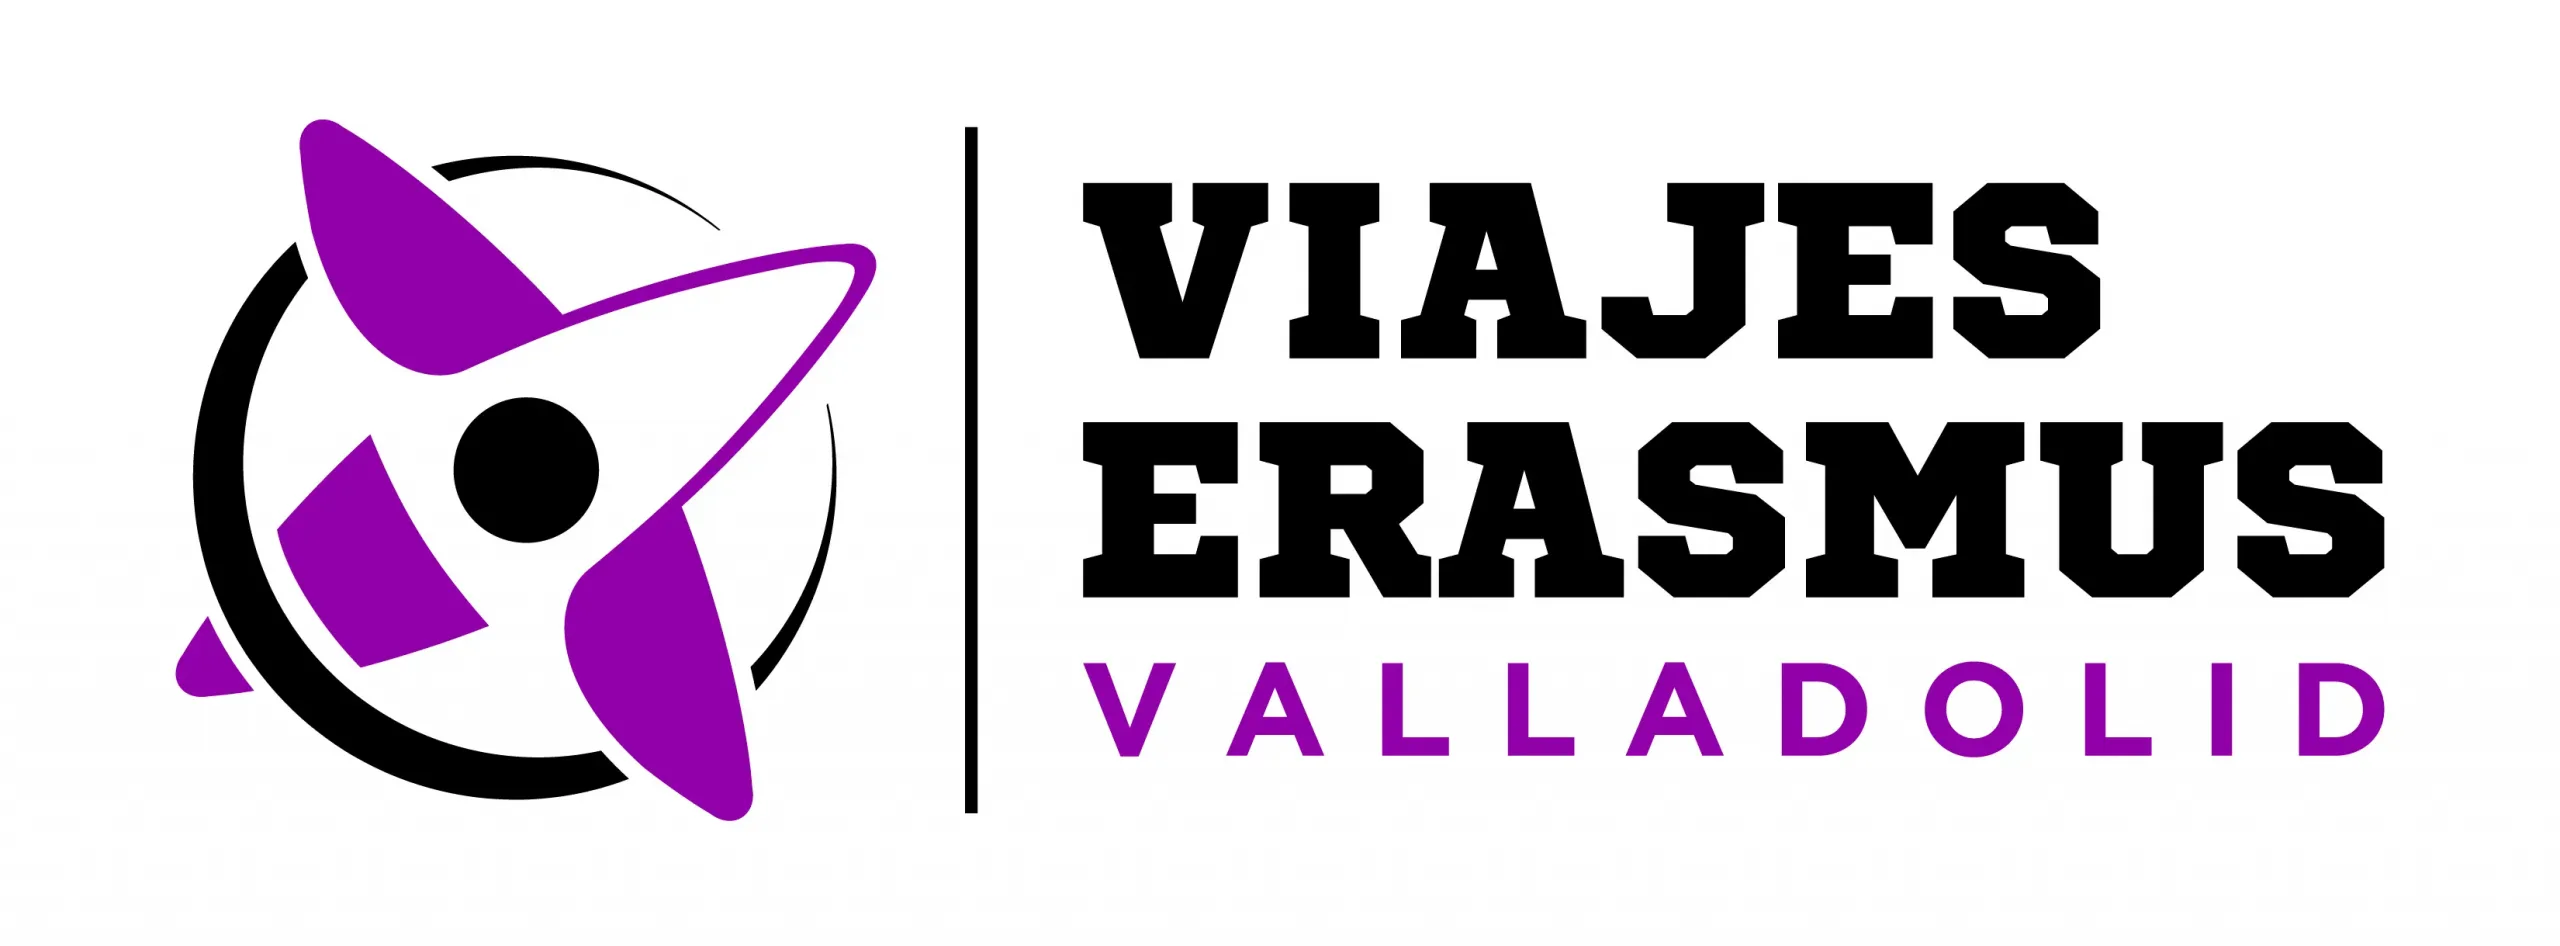 Viajes Erasmus Valladolid - Logotipo